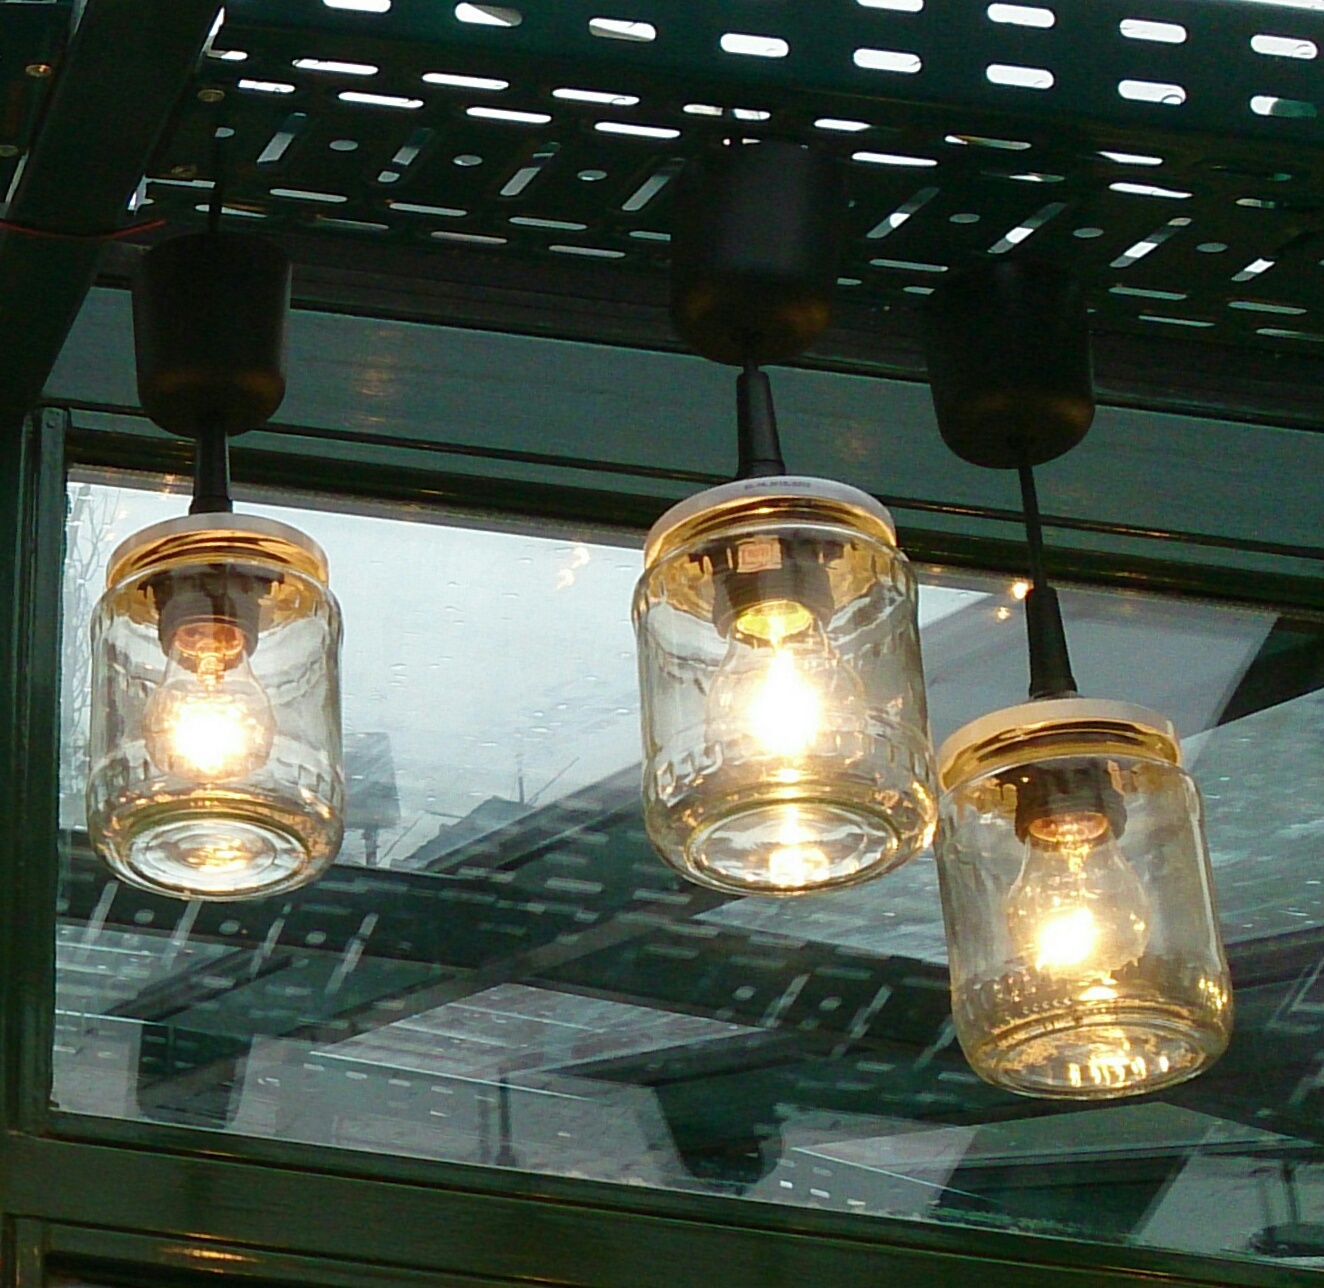 Humildad Pertenecer a Depresión Cómo hacer una lámpara con frascos de vidrio reciclados